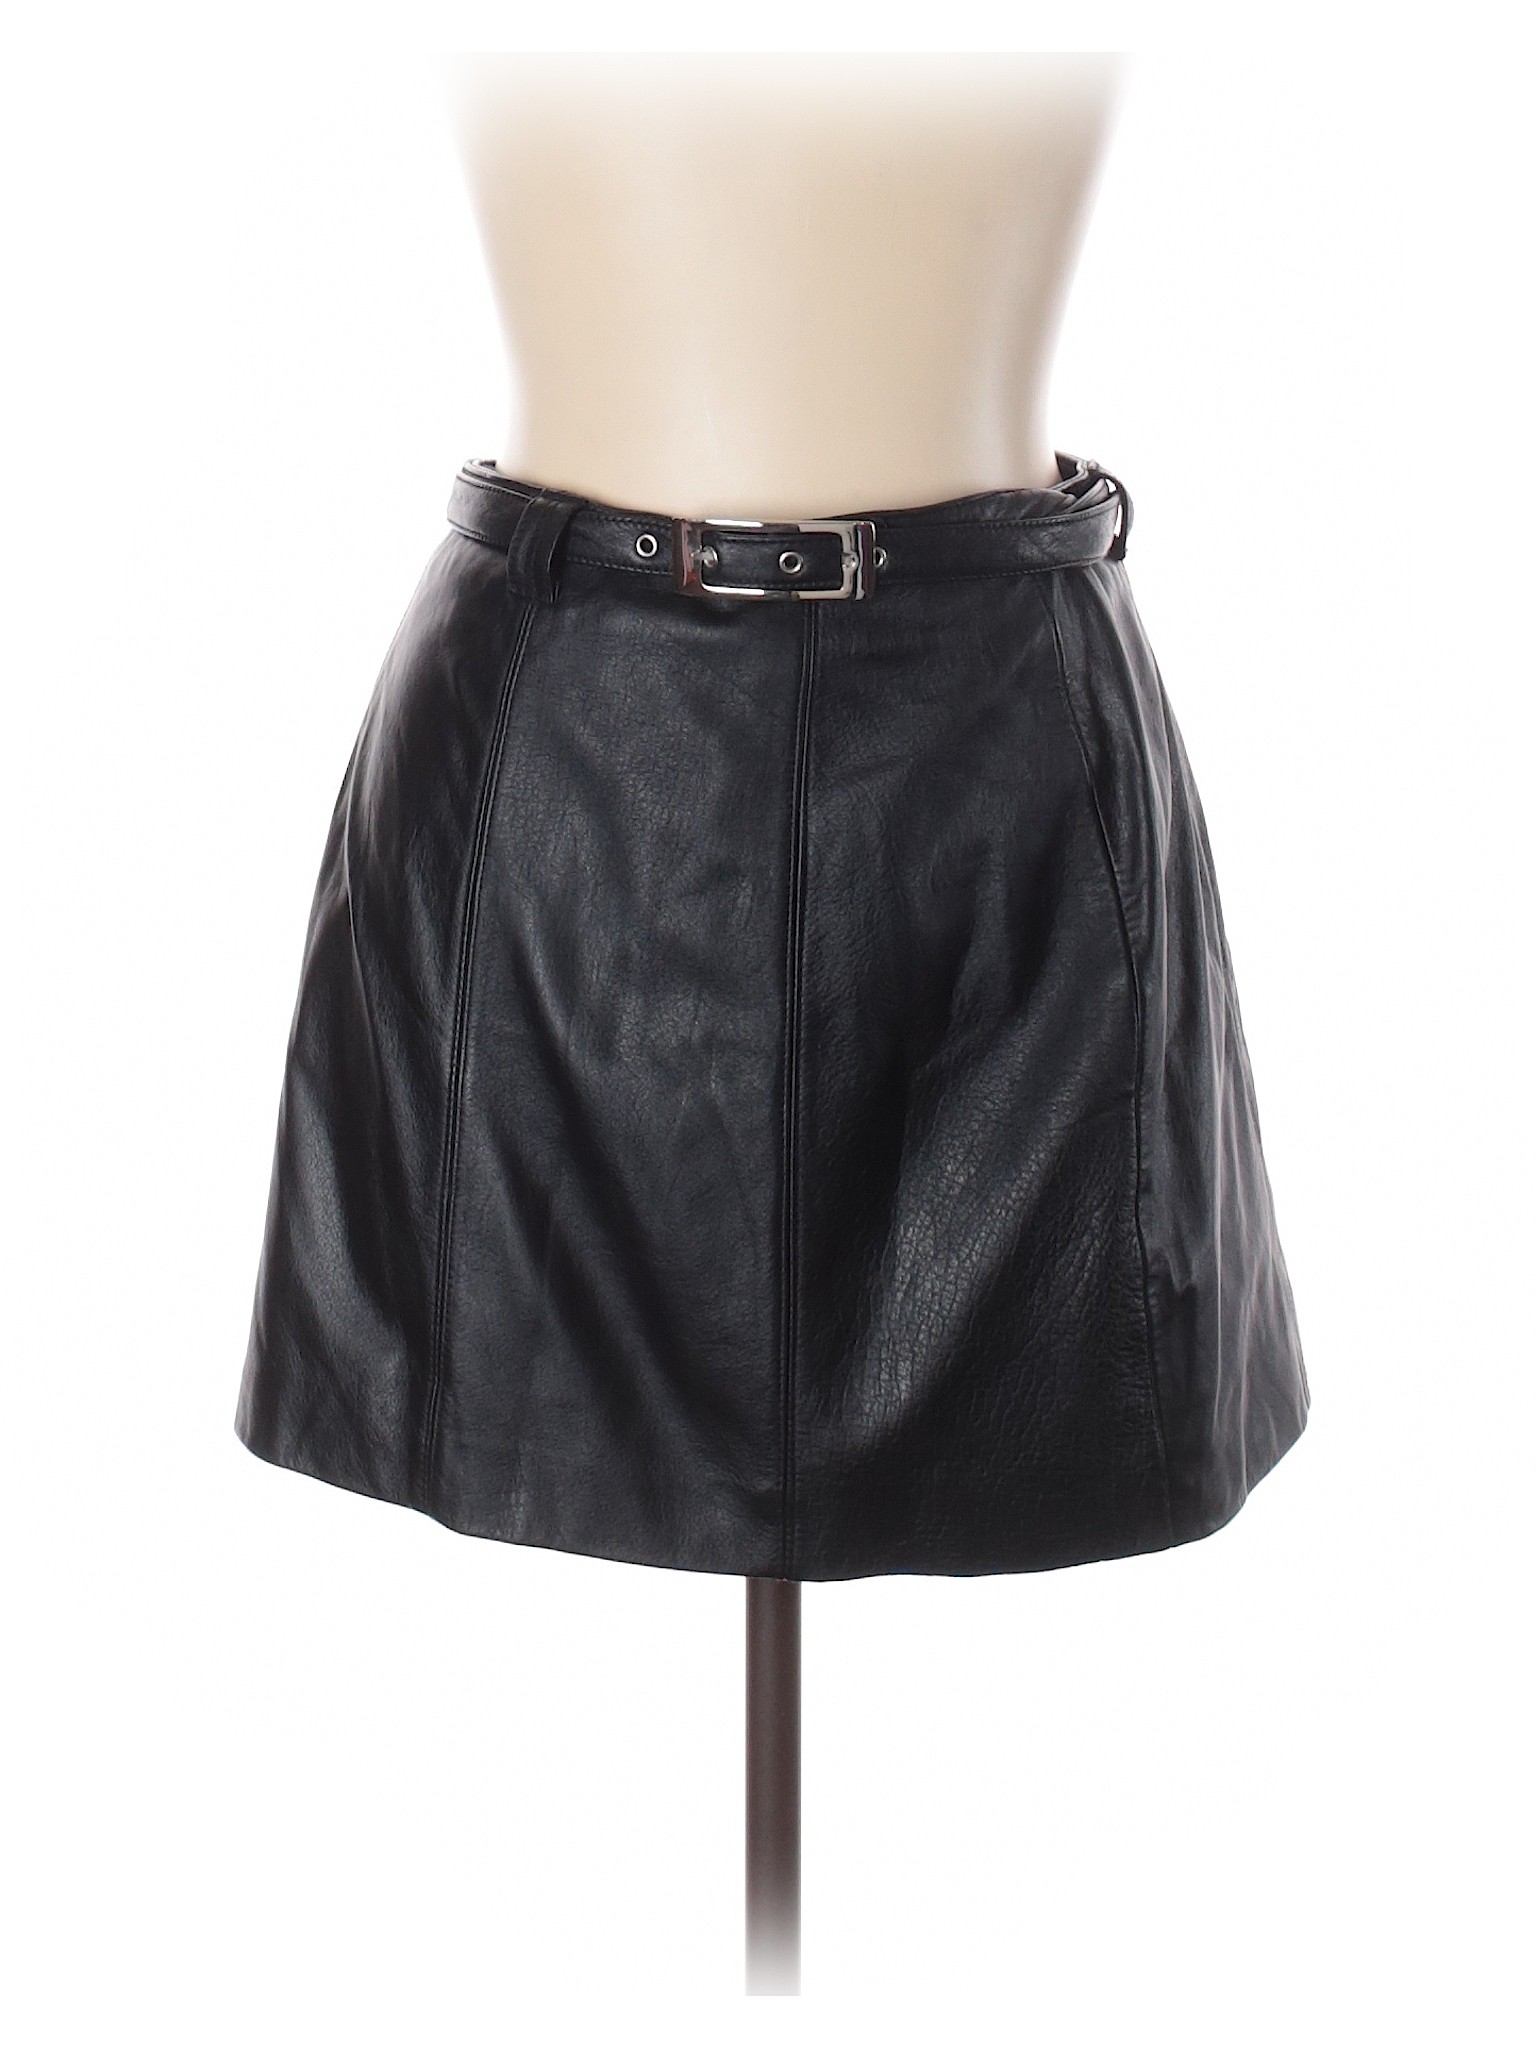 Wilsons Leather Women Black Leather Skirt 12 | eBay